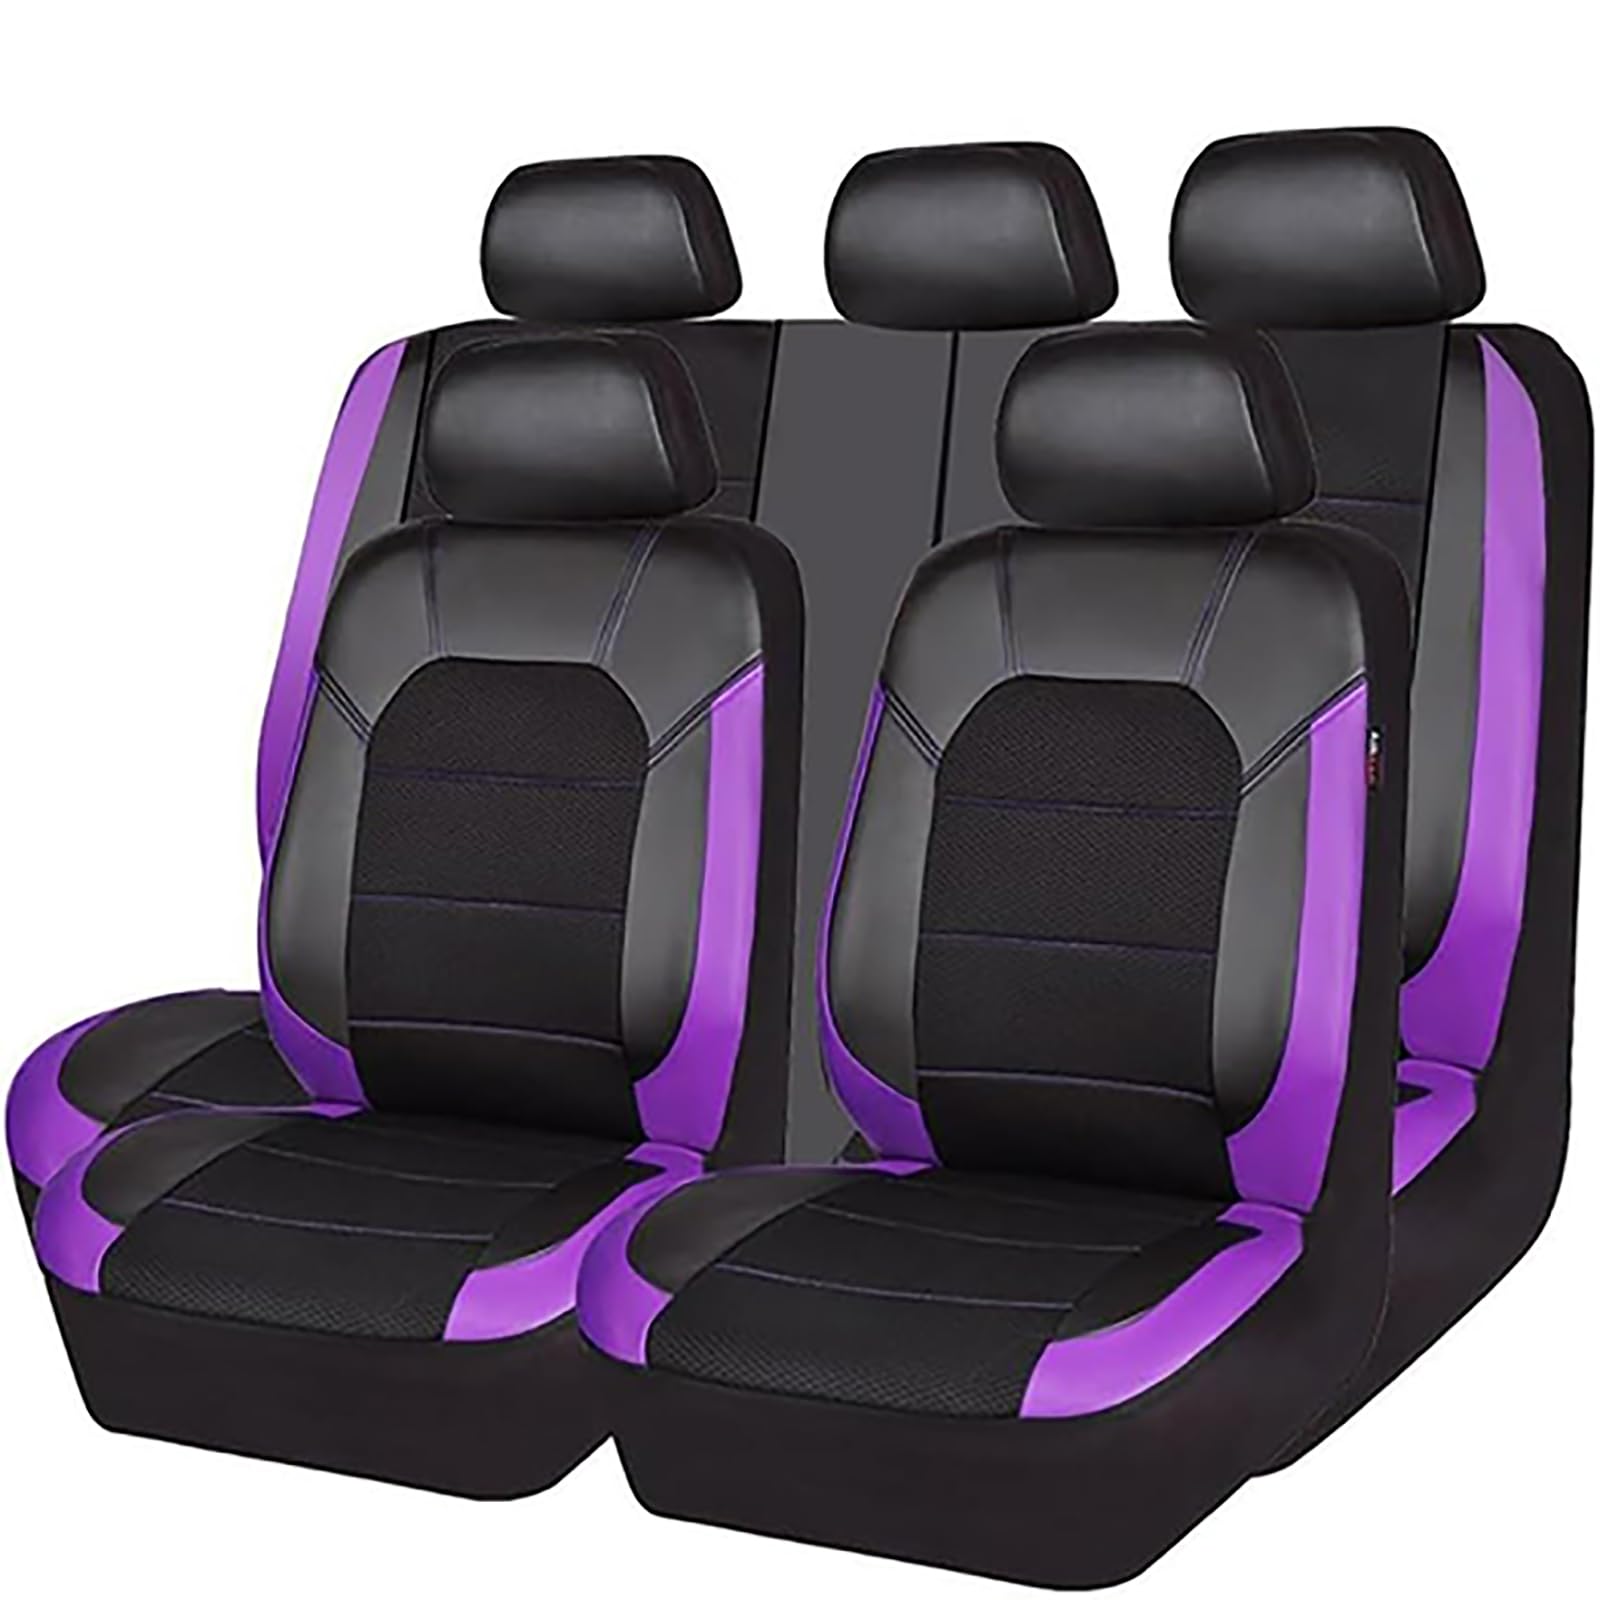 EYHQKRTR Auto Leder Sitzkissen Für P-orsche Cayenne 2003-2009, 5 Sitzer Full Set SitzbezüGe Schonbezug Vorne Rückbank Sitzschutz Compatible Airbag Innenraum Zubehör,E/Purple von EYHQKRTR